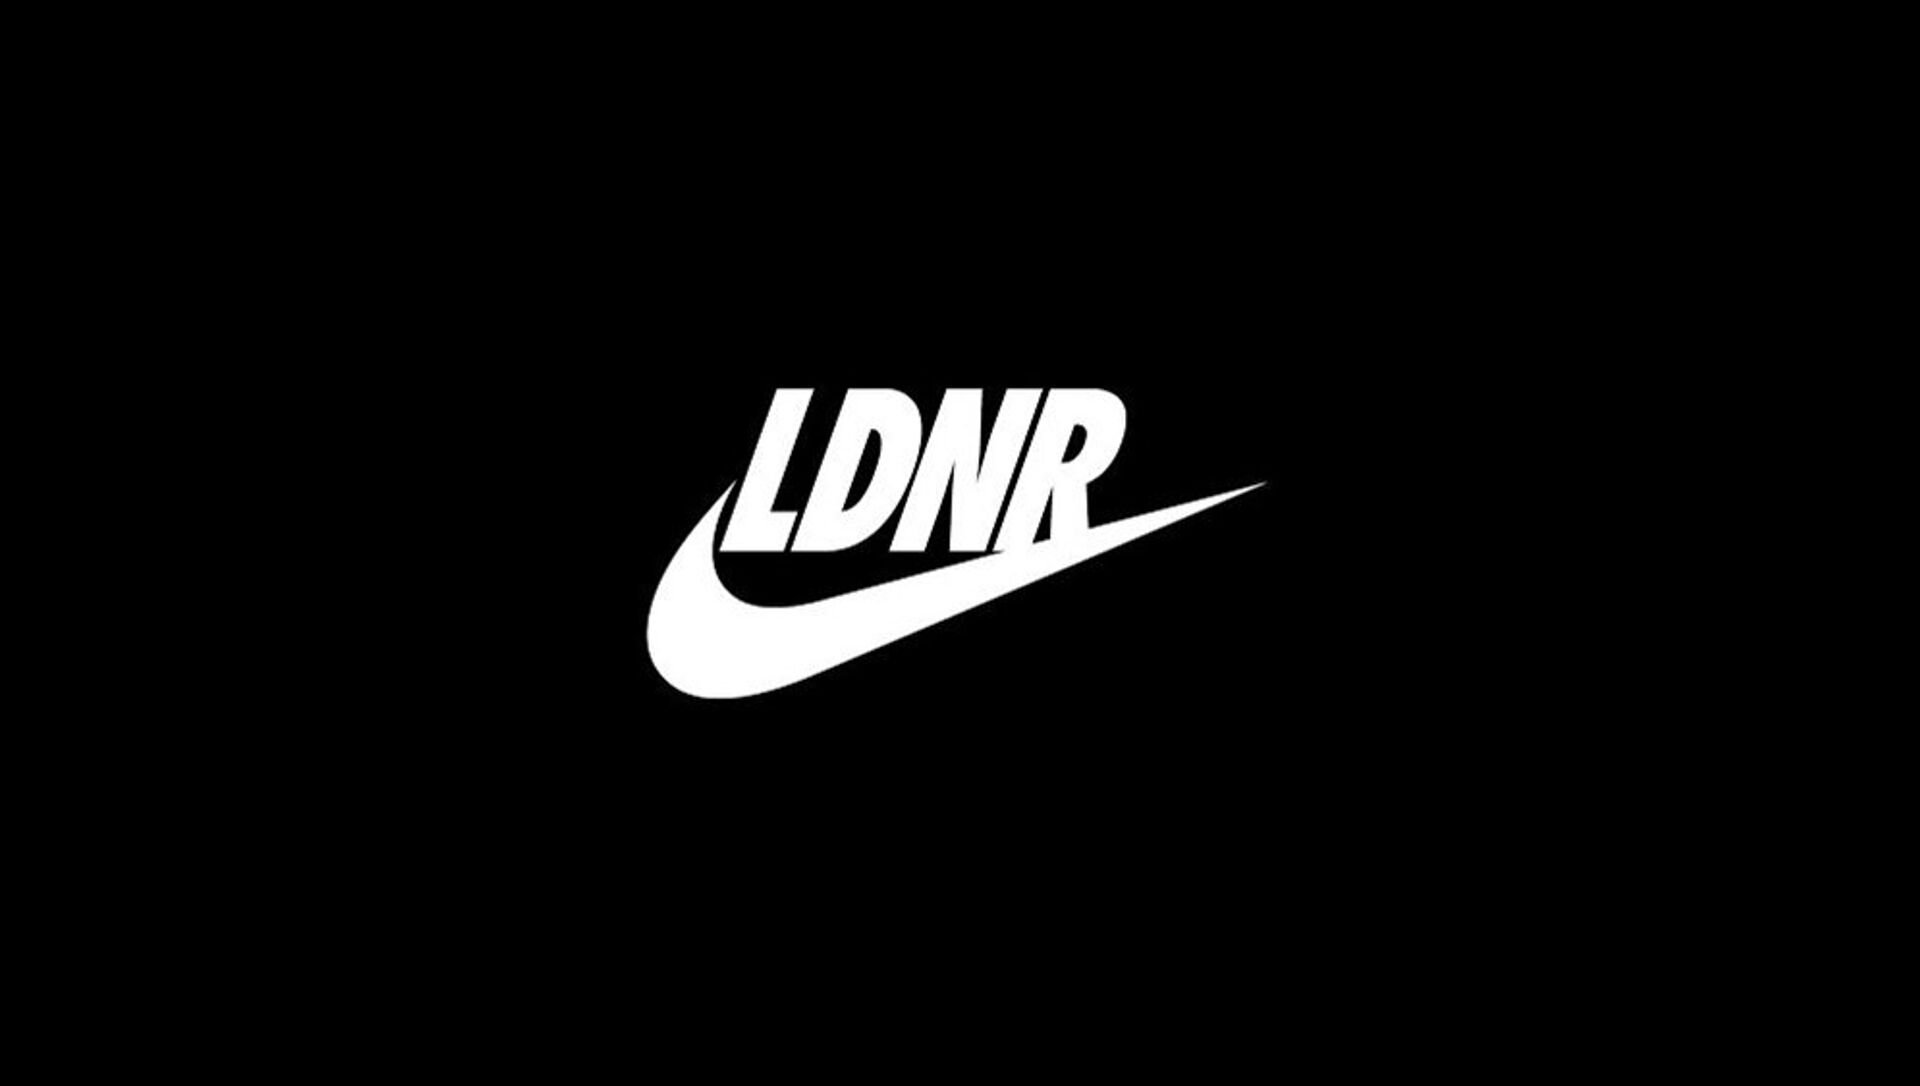 Nike logo 1985